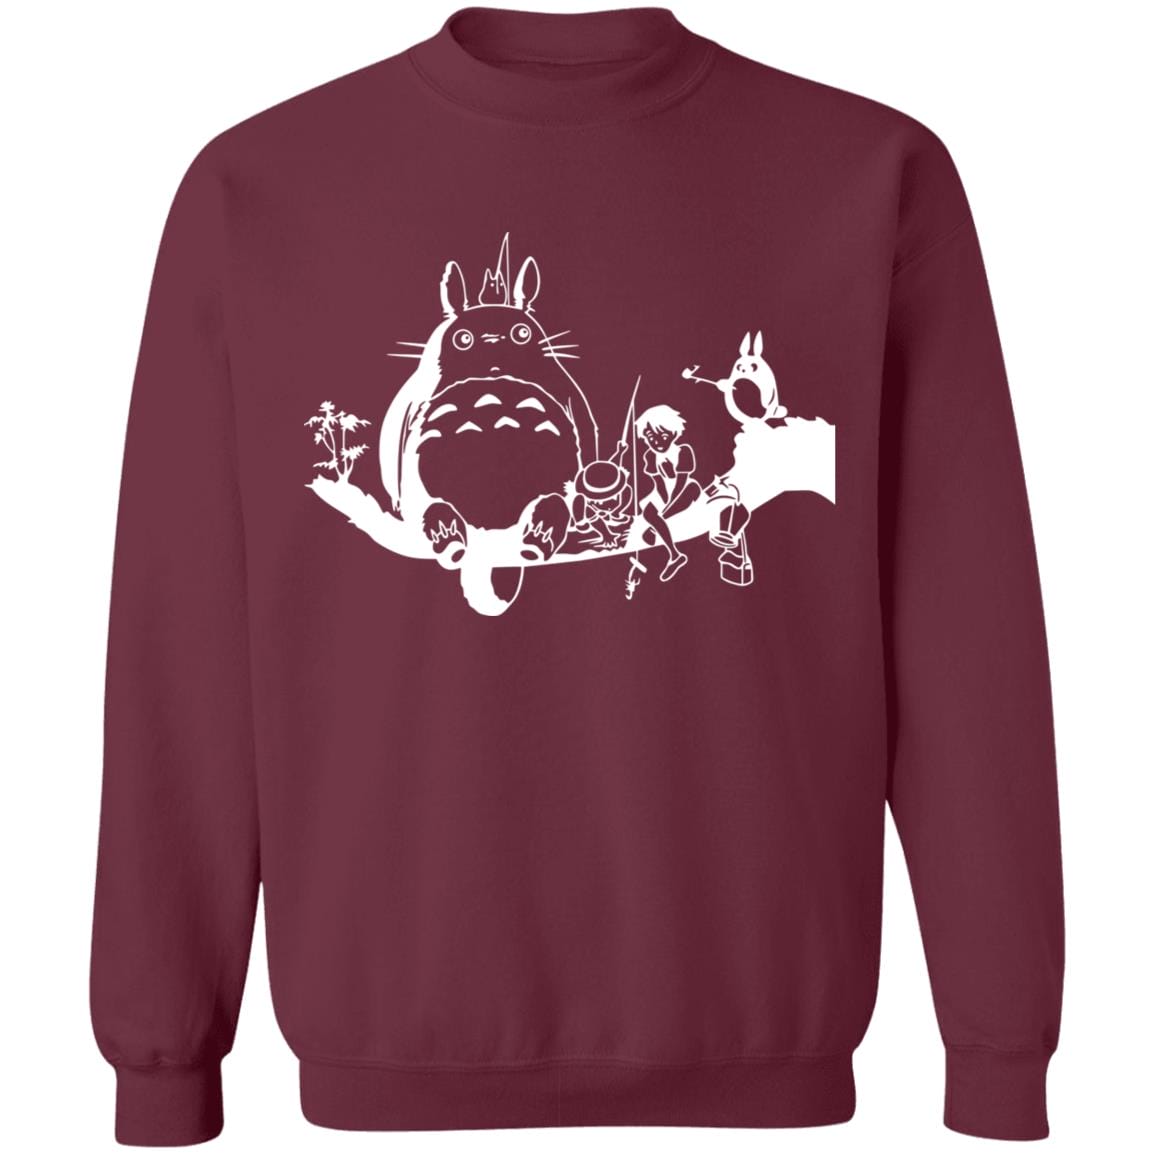 My Neighbor Totoro – Fishing Retro Sweatshirt